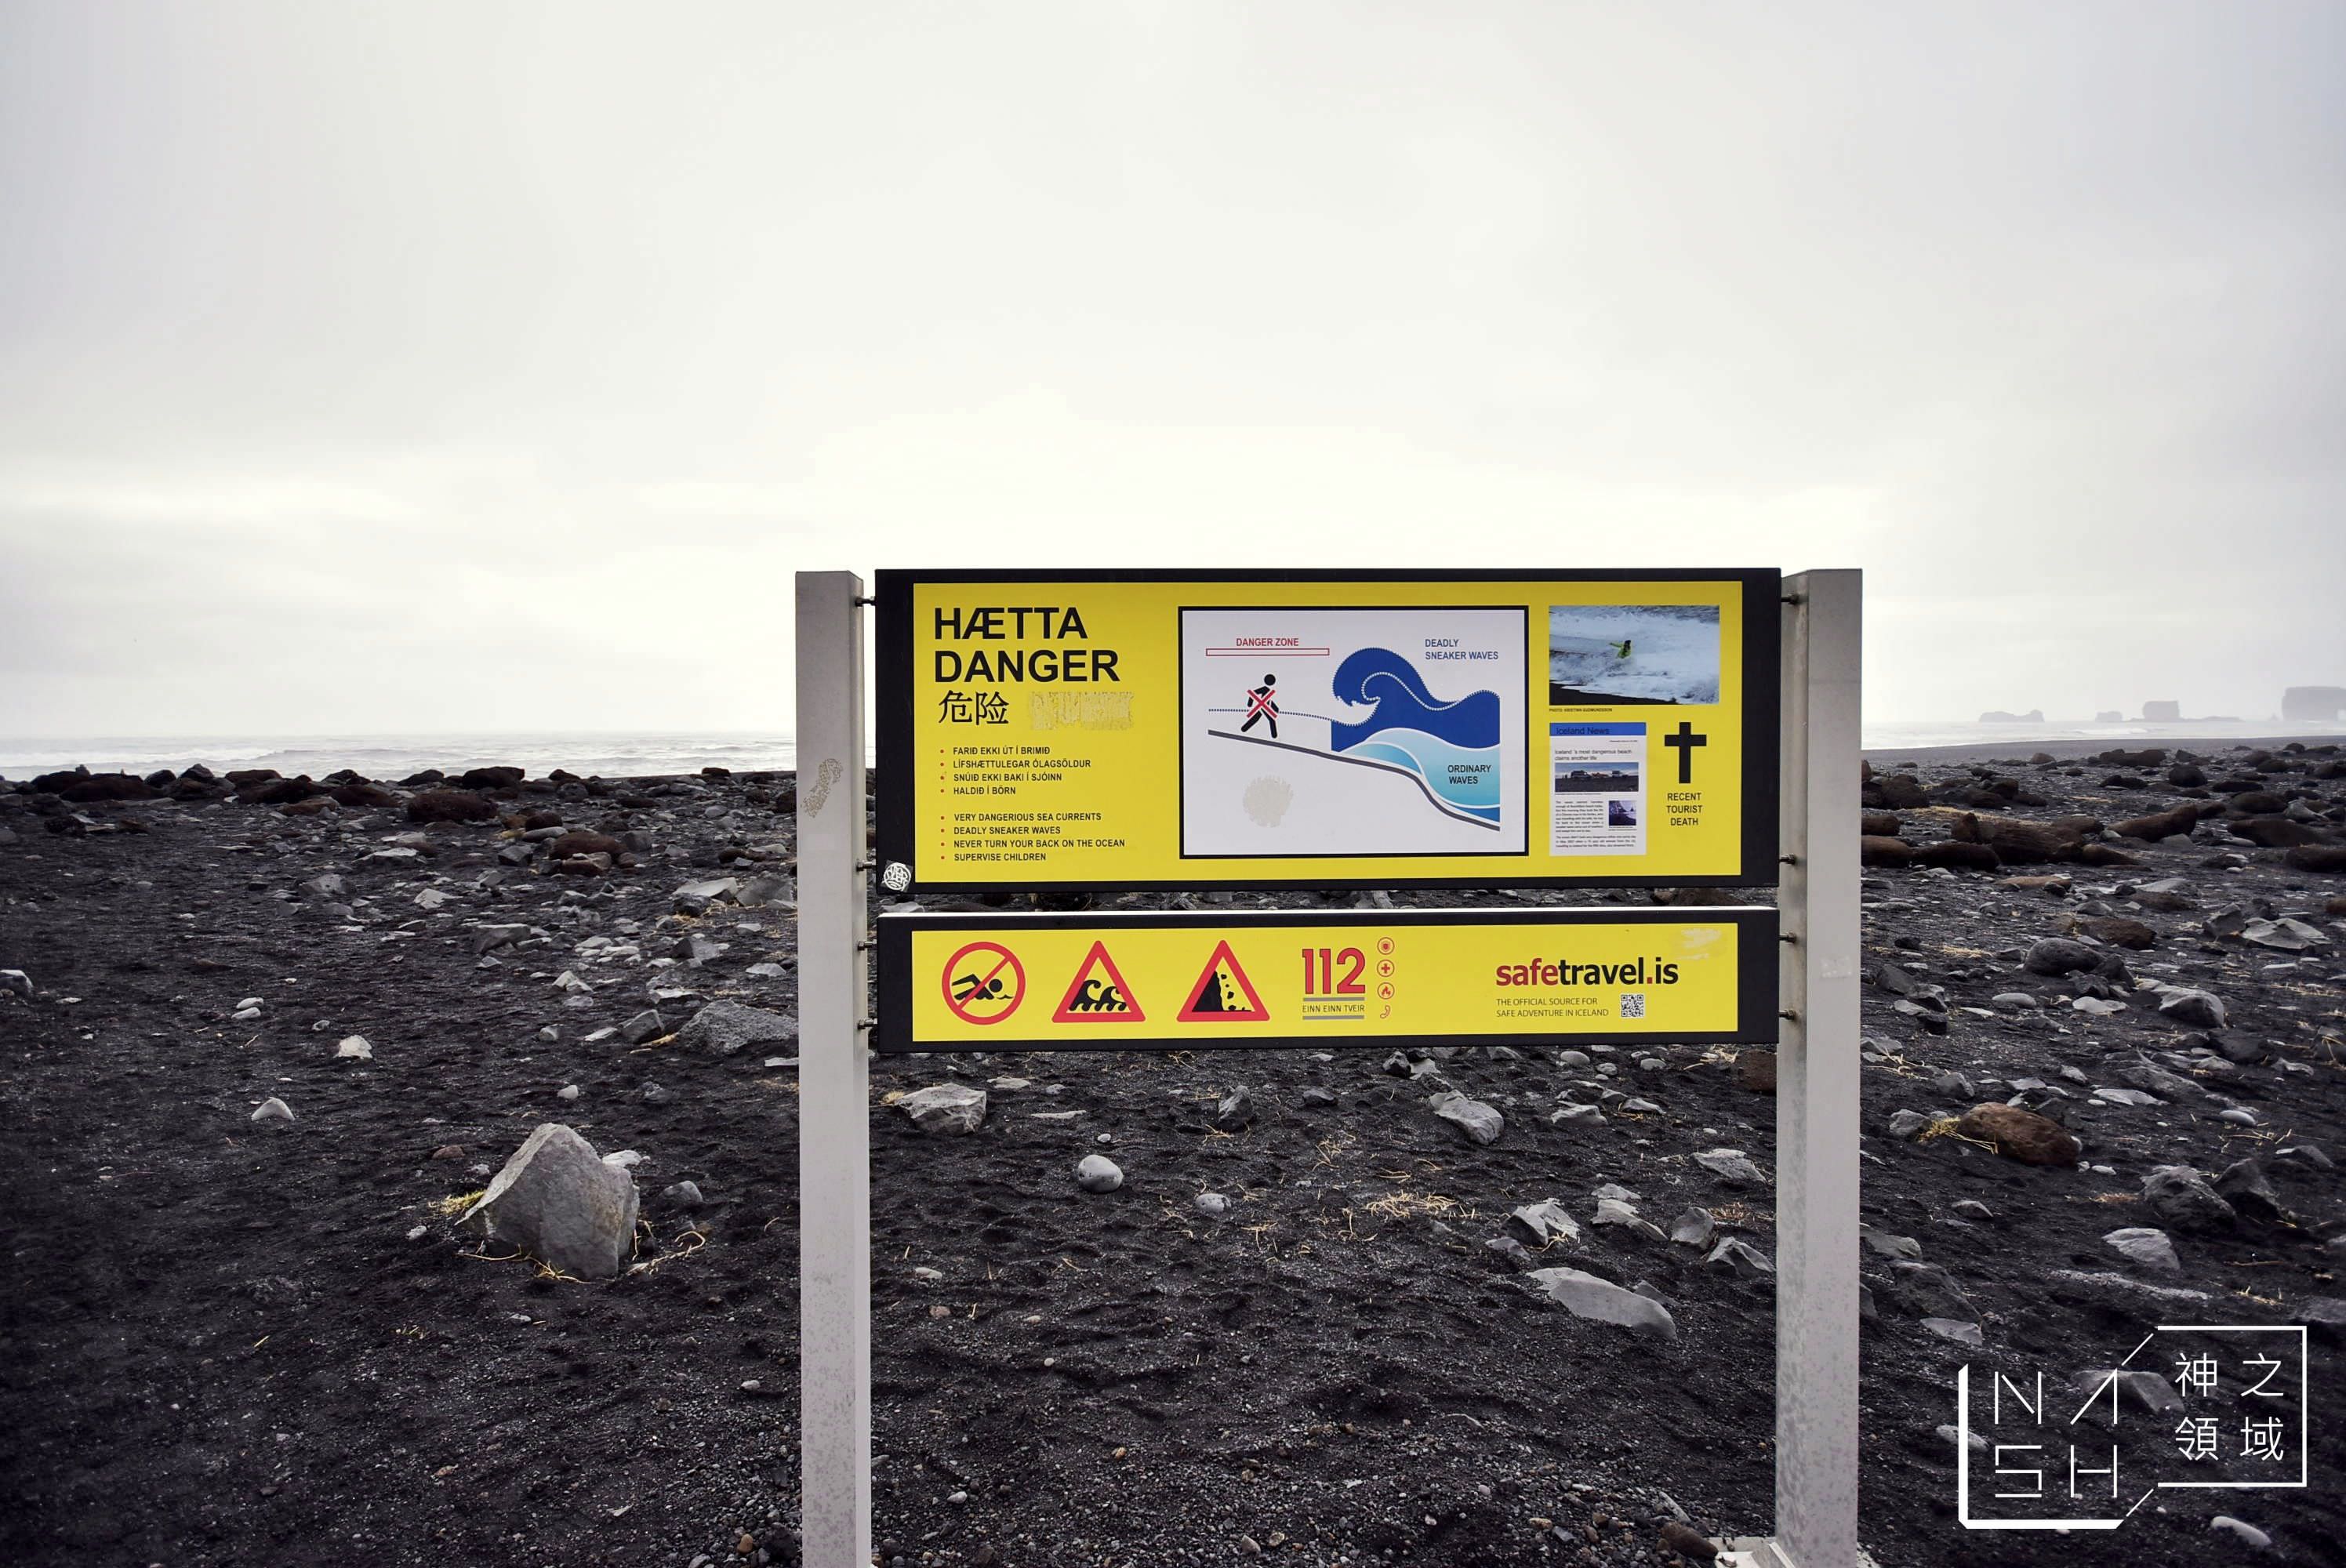 冰島自由行環島景點推薦,冰島自助景點推薦,黑沙灘,Reynisfjara Beach